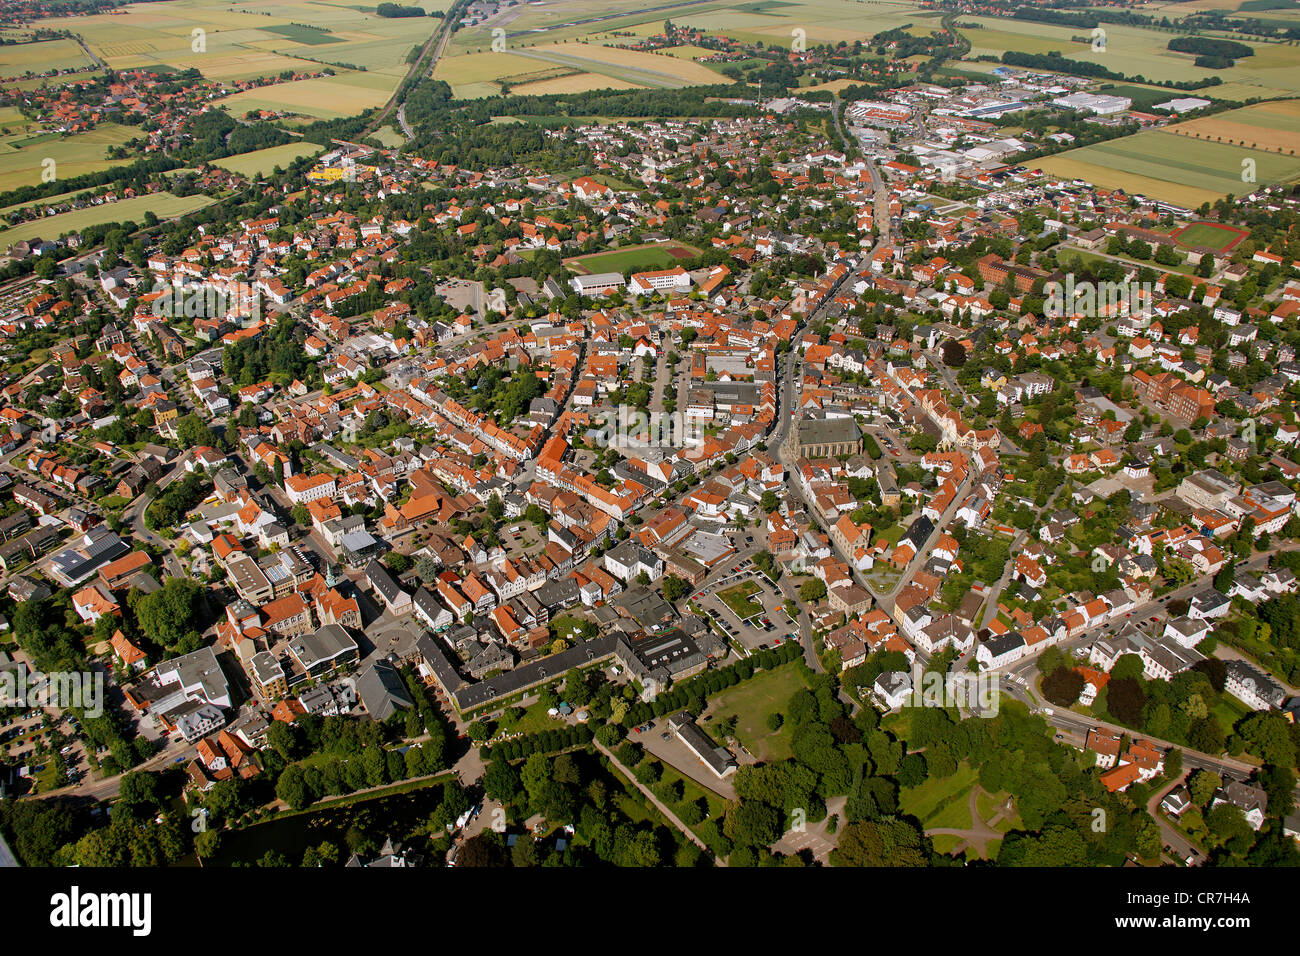 Vue aérienne, Rinteln, district de Schaumburg, Basse-Saxe, Allemagne, Europe Banque D'Images